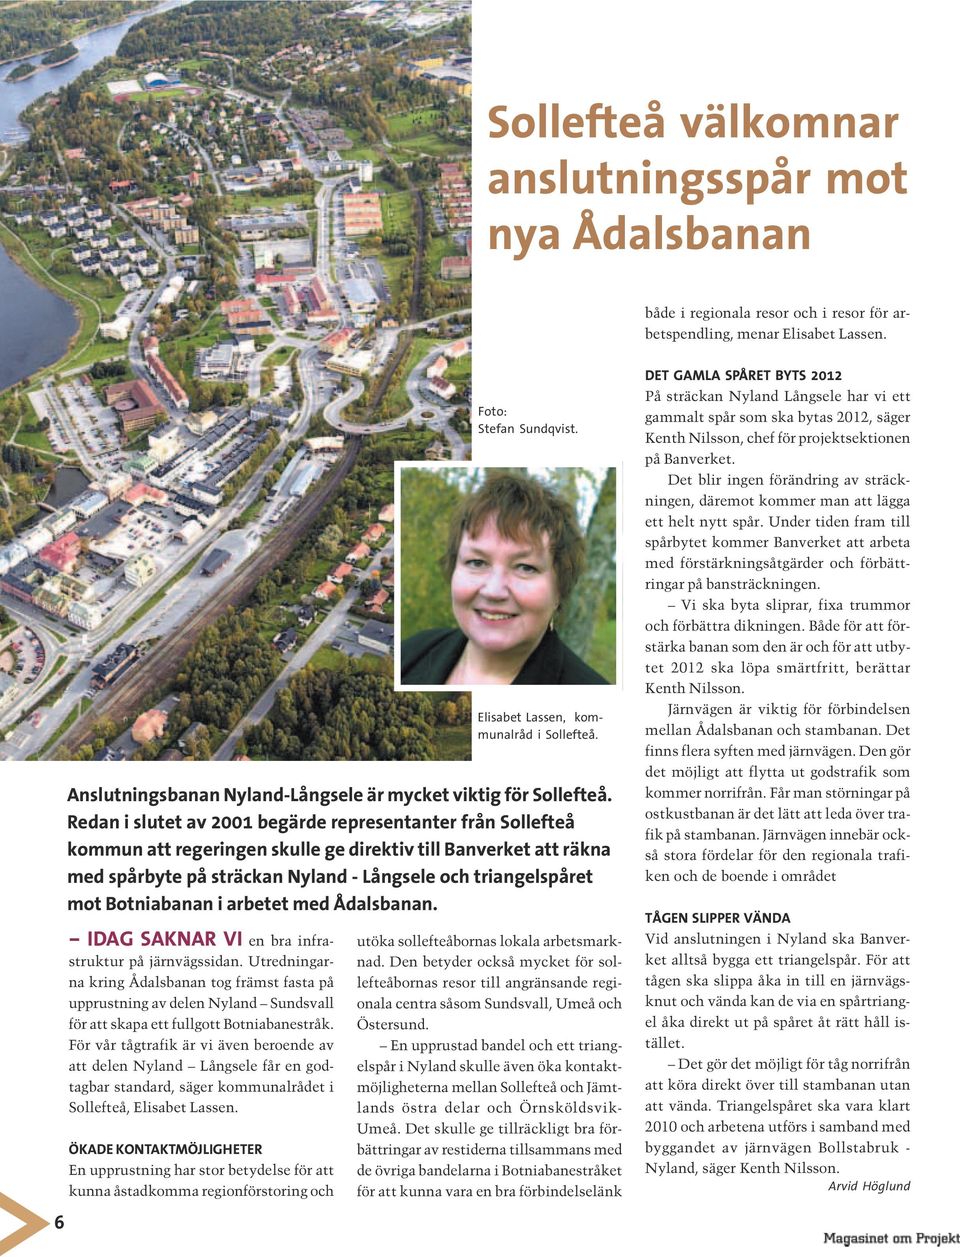 För vår tågtrafik är vi även beroende av att delen Nyland Långsele får en godtagbar standard, säger kommunalrådet i Sollefteå, Elisabet Lassen.